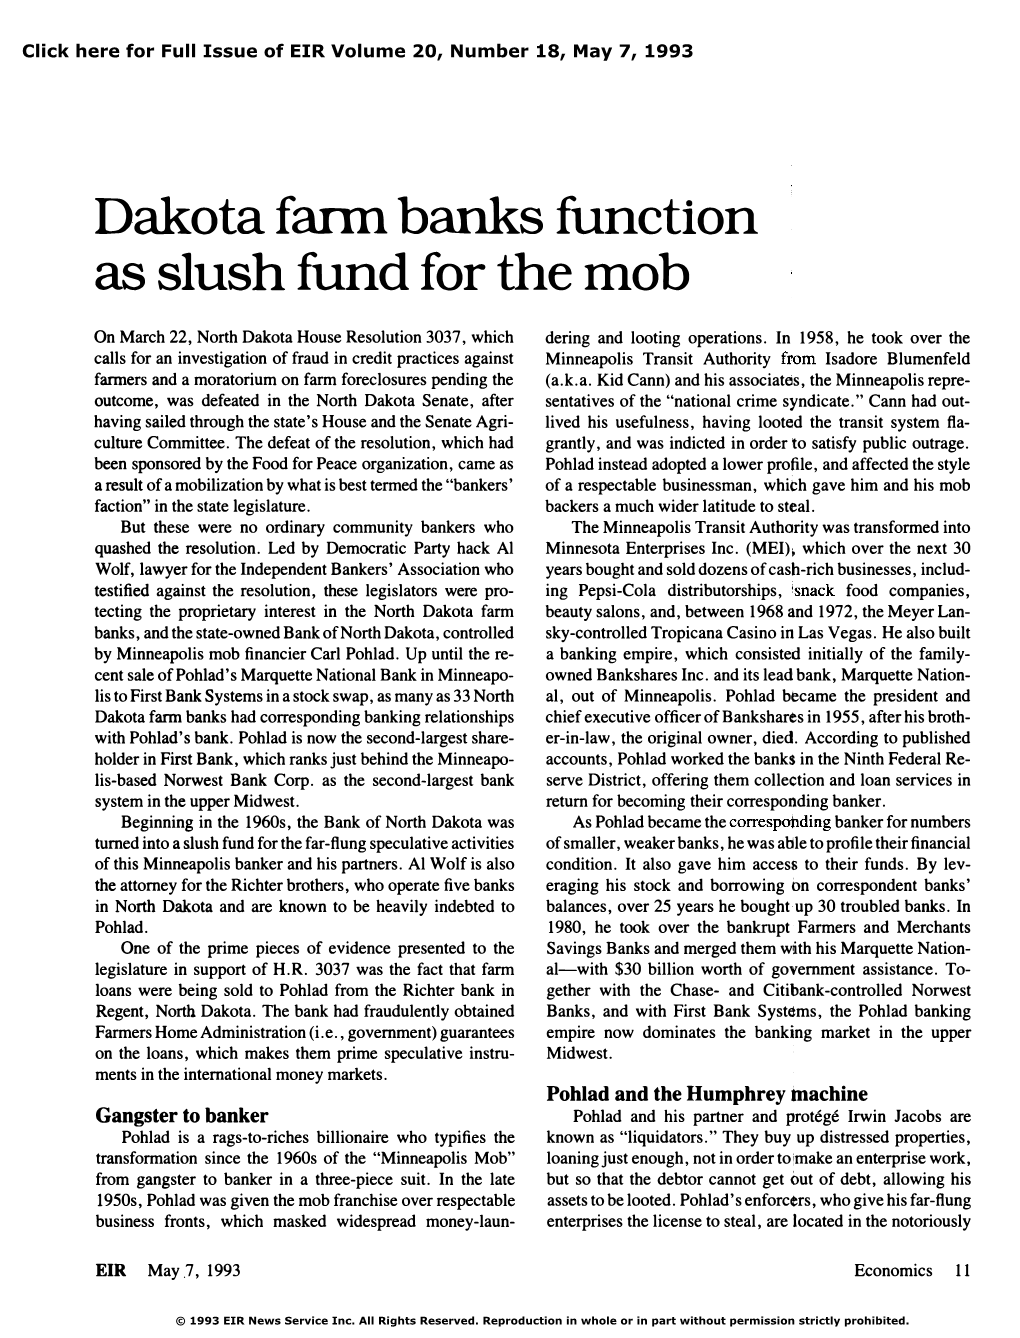 Dakota Farm Banks Function As Slush Fund for The